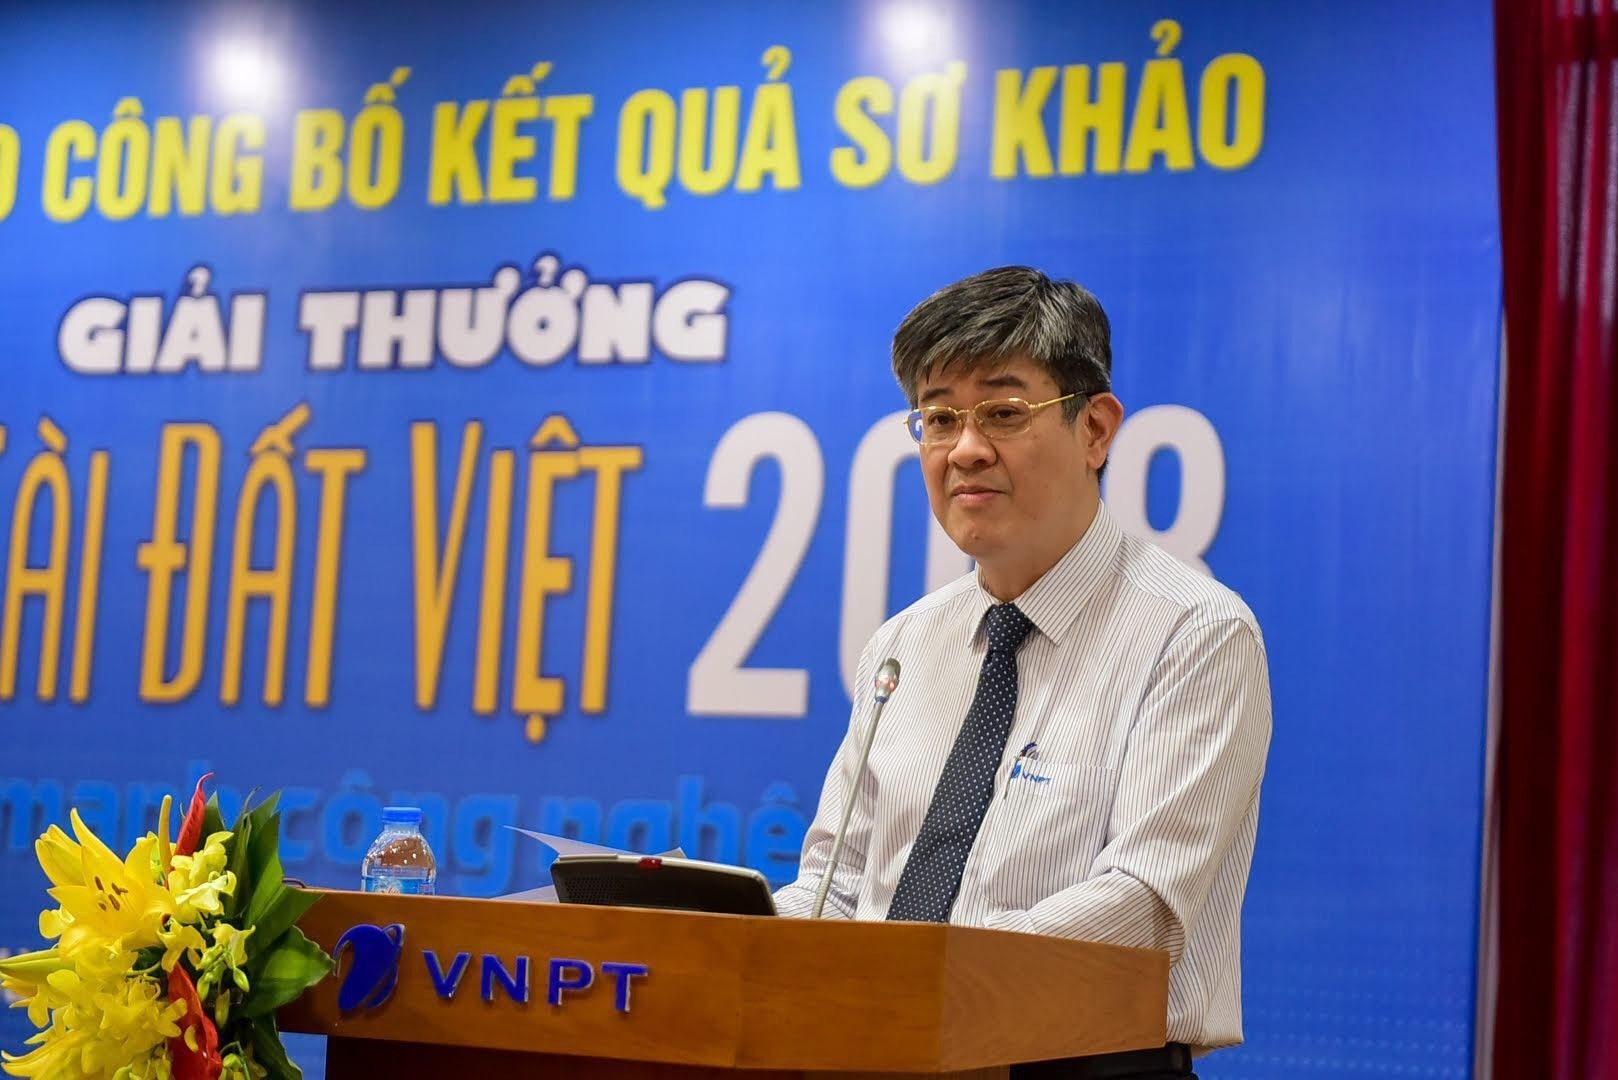  Ông Hồ Đức Thắng, đại diện của VNPT: NTĐV đã trở thành bệ phóng thành công cho các nhân tài từ nhiều năm nay. 